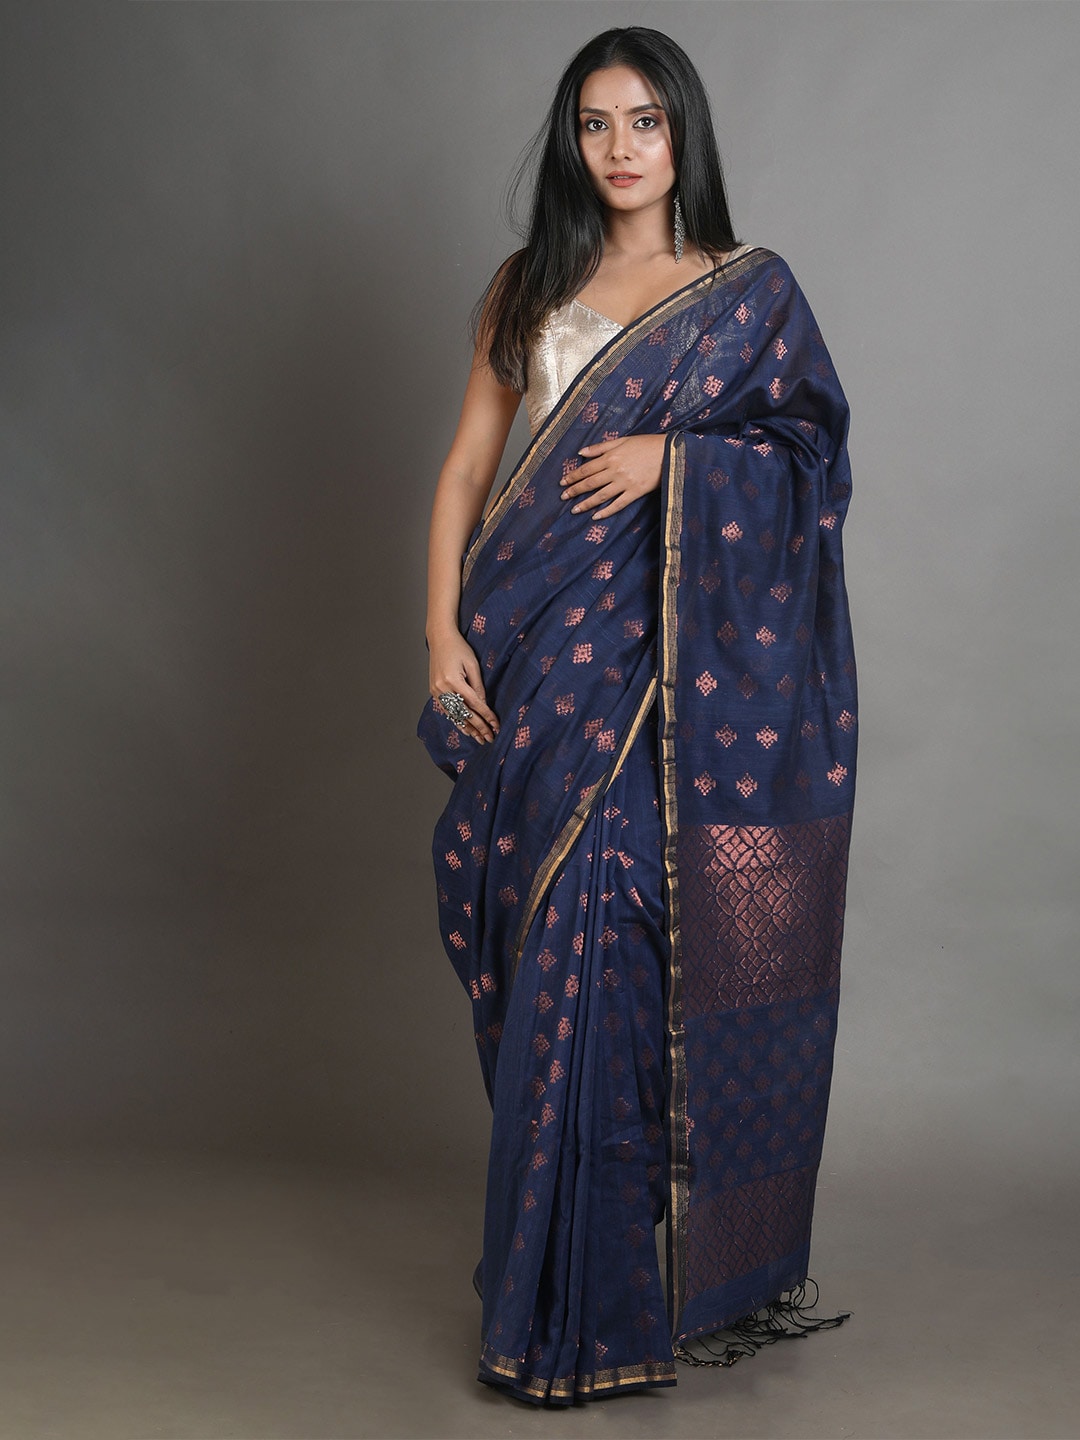 Arhi Blue & Copper-Toned Woven Design Zari Pure Linen Saree Price in India